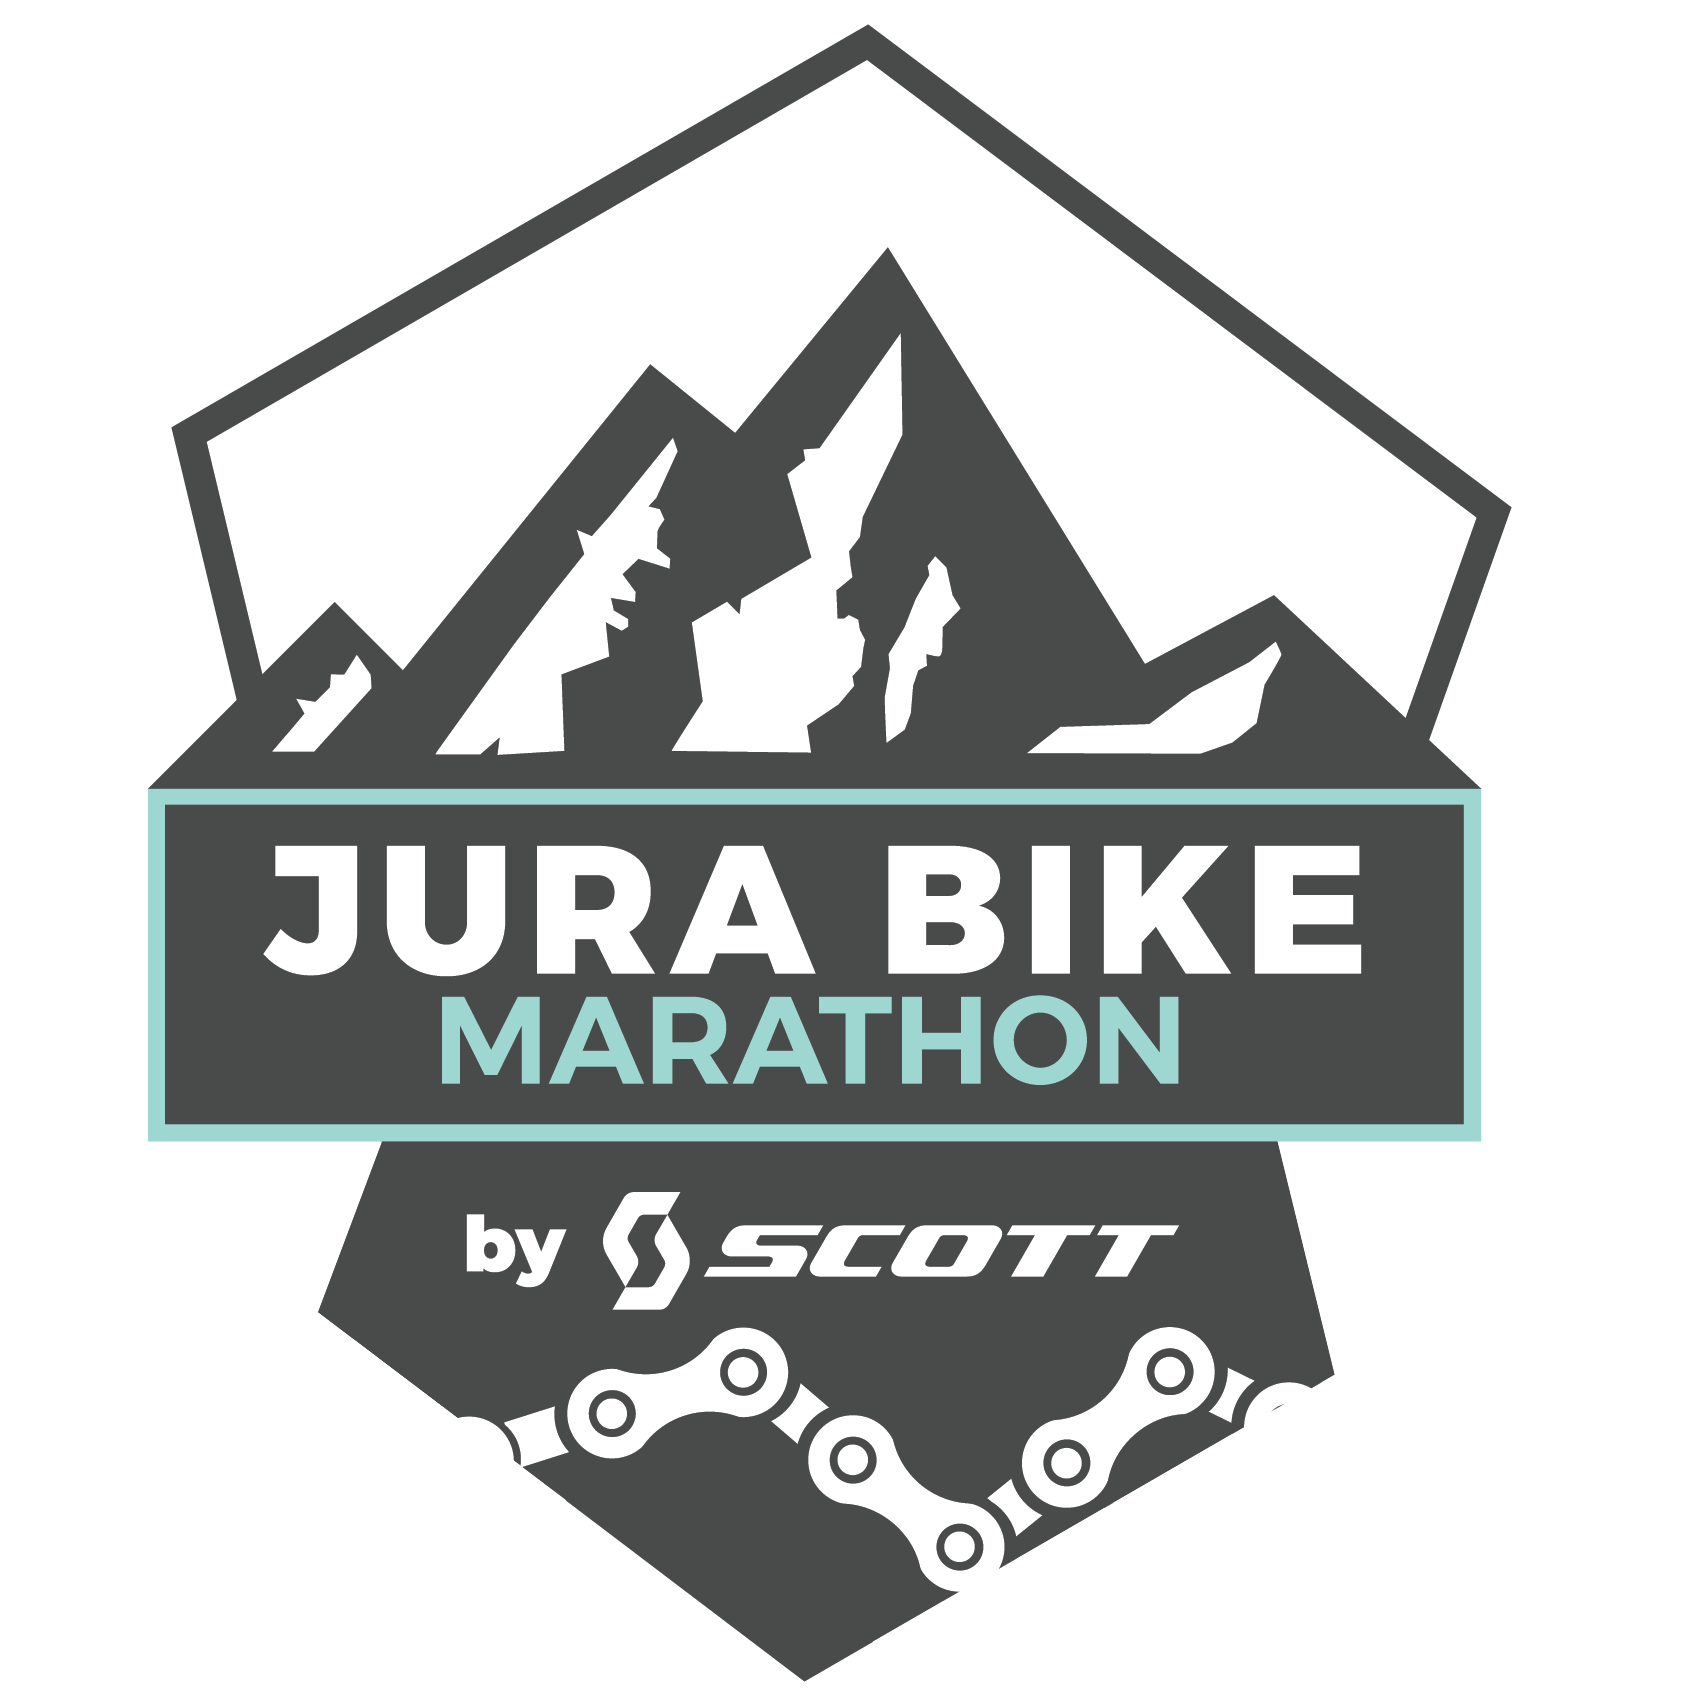 Jura bike